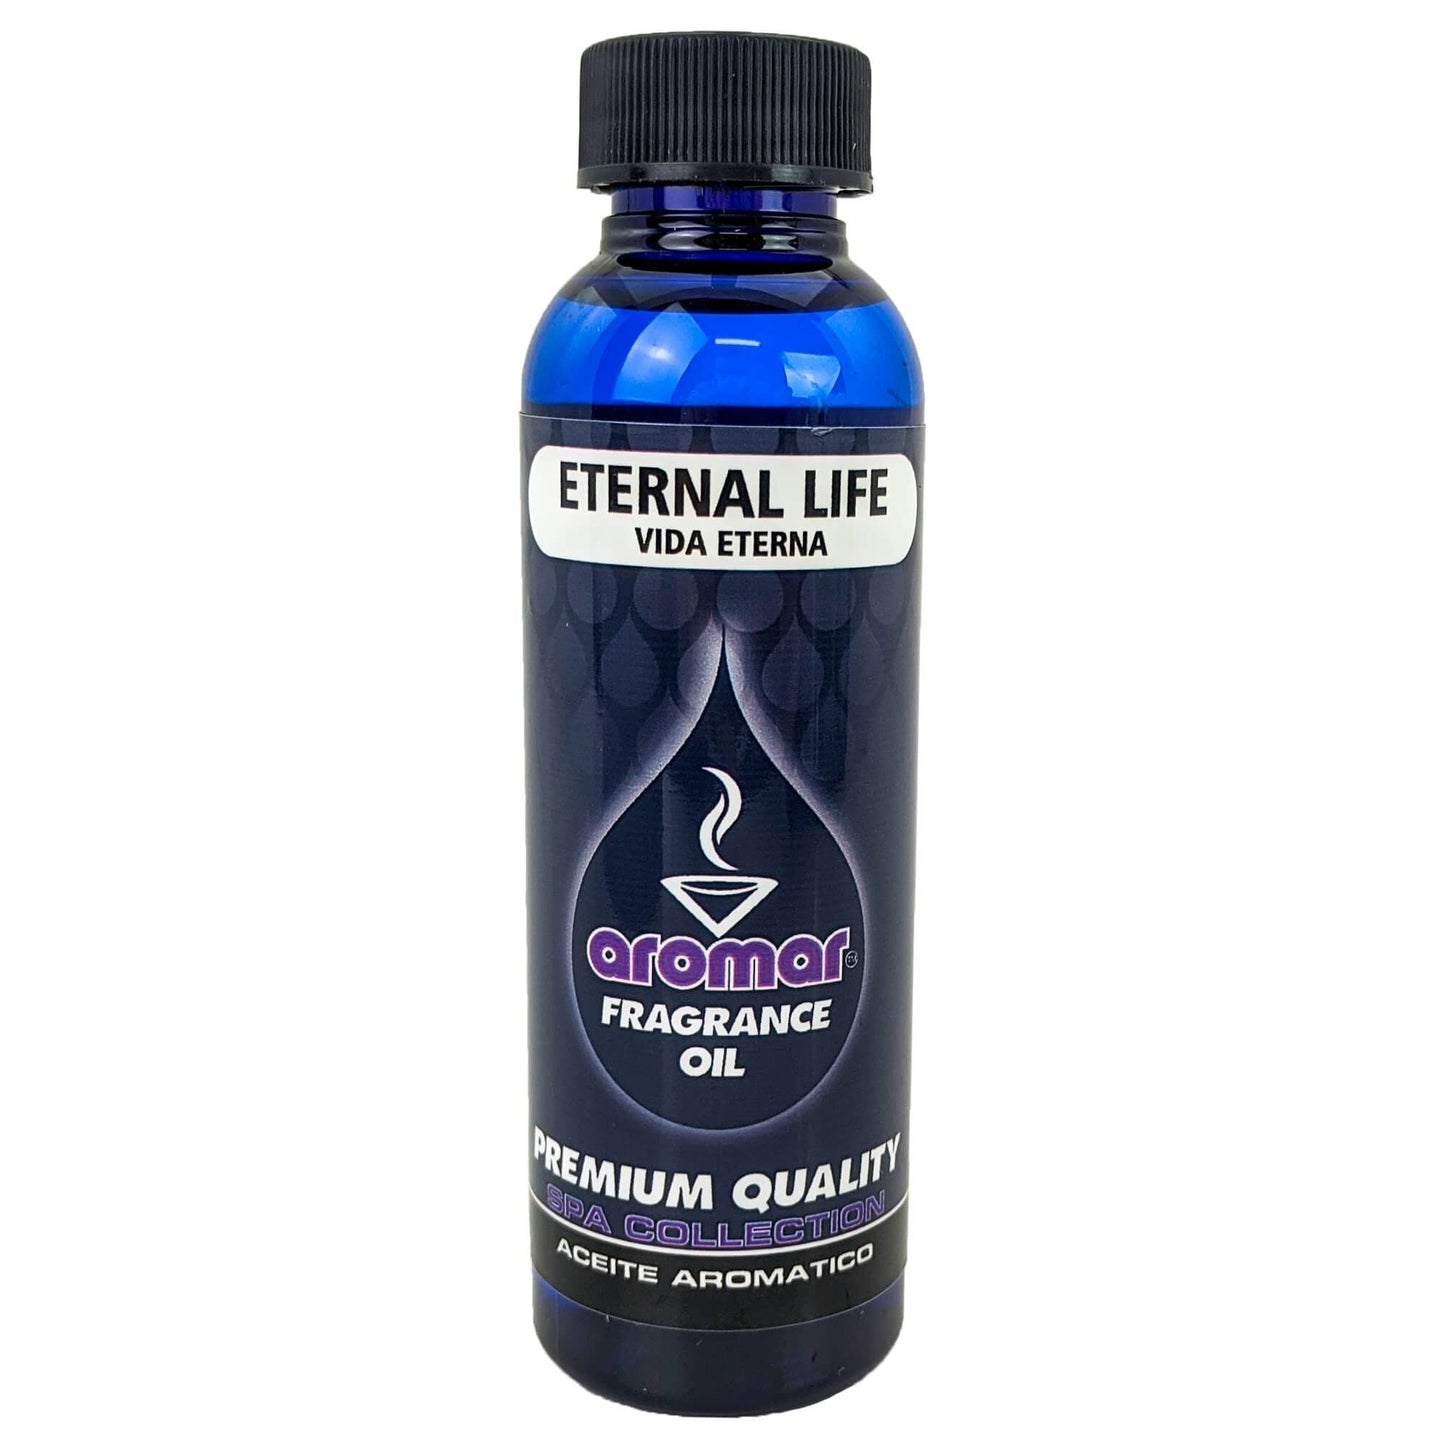 Eternal Life Scent Aromar Fragrance Oil, 2oz/60ml